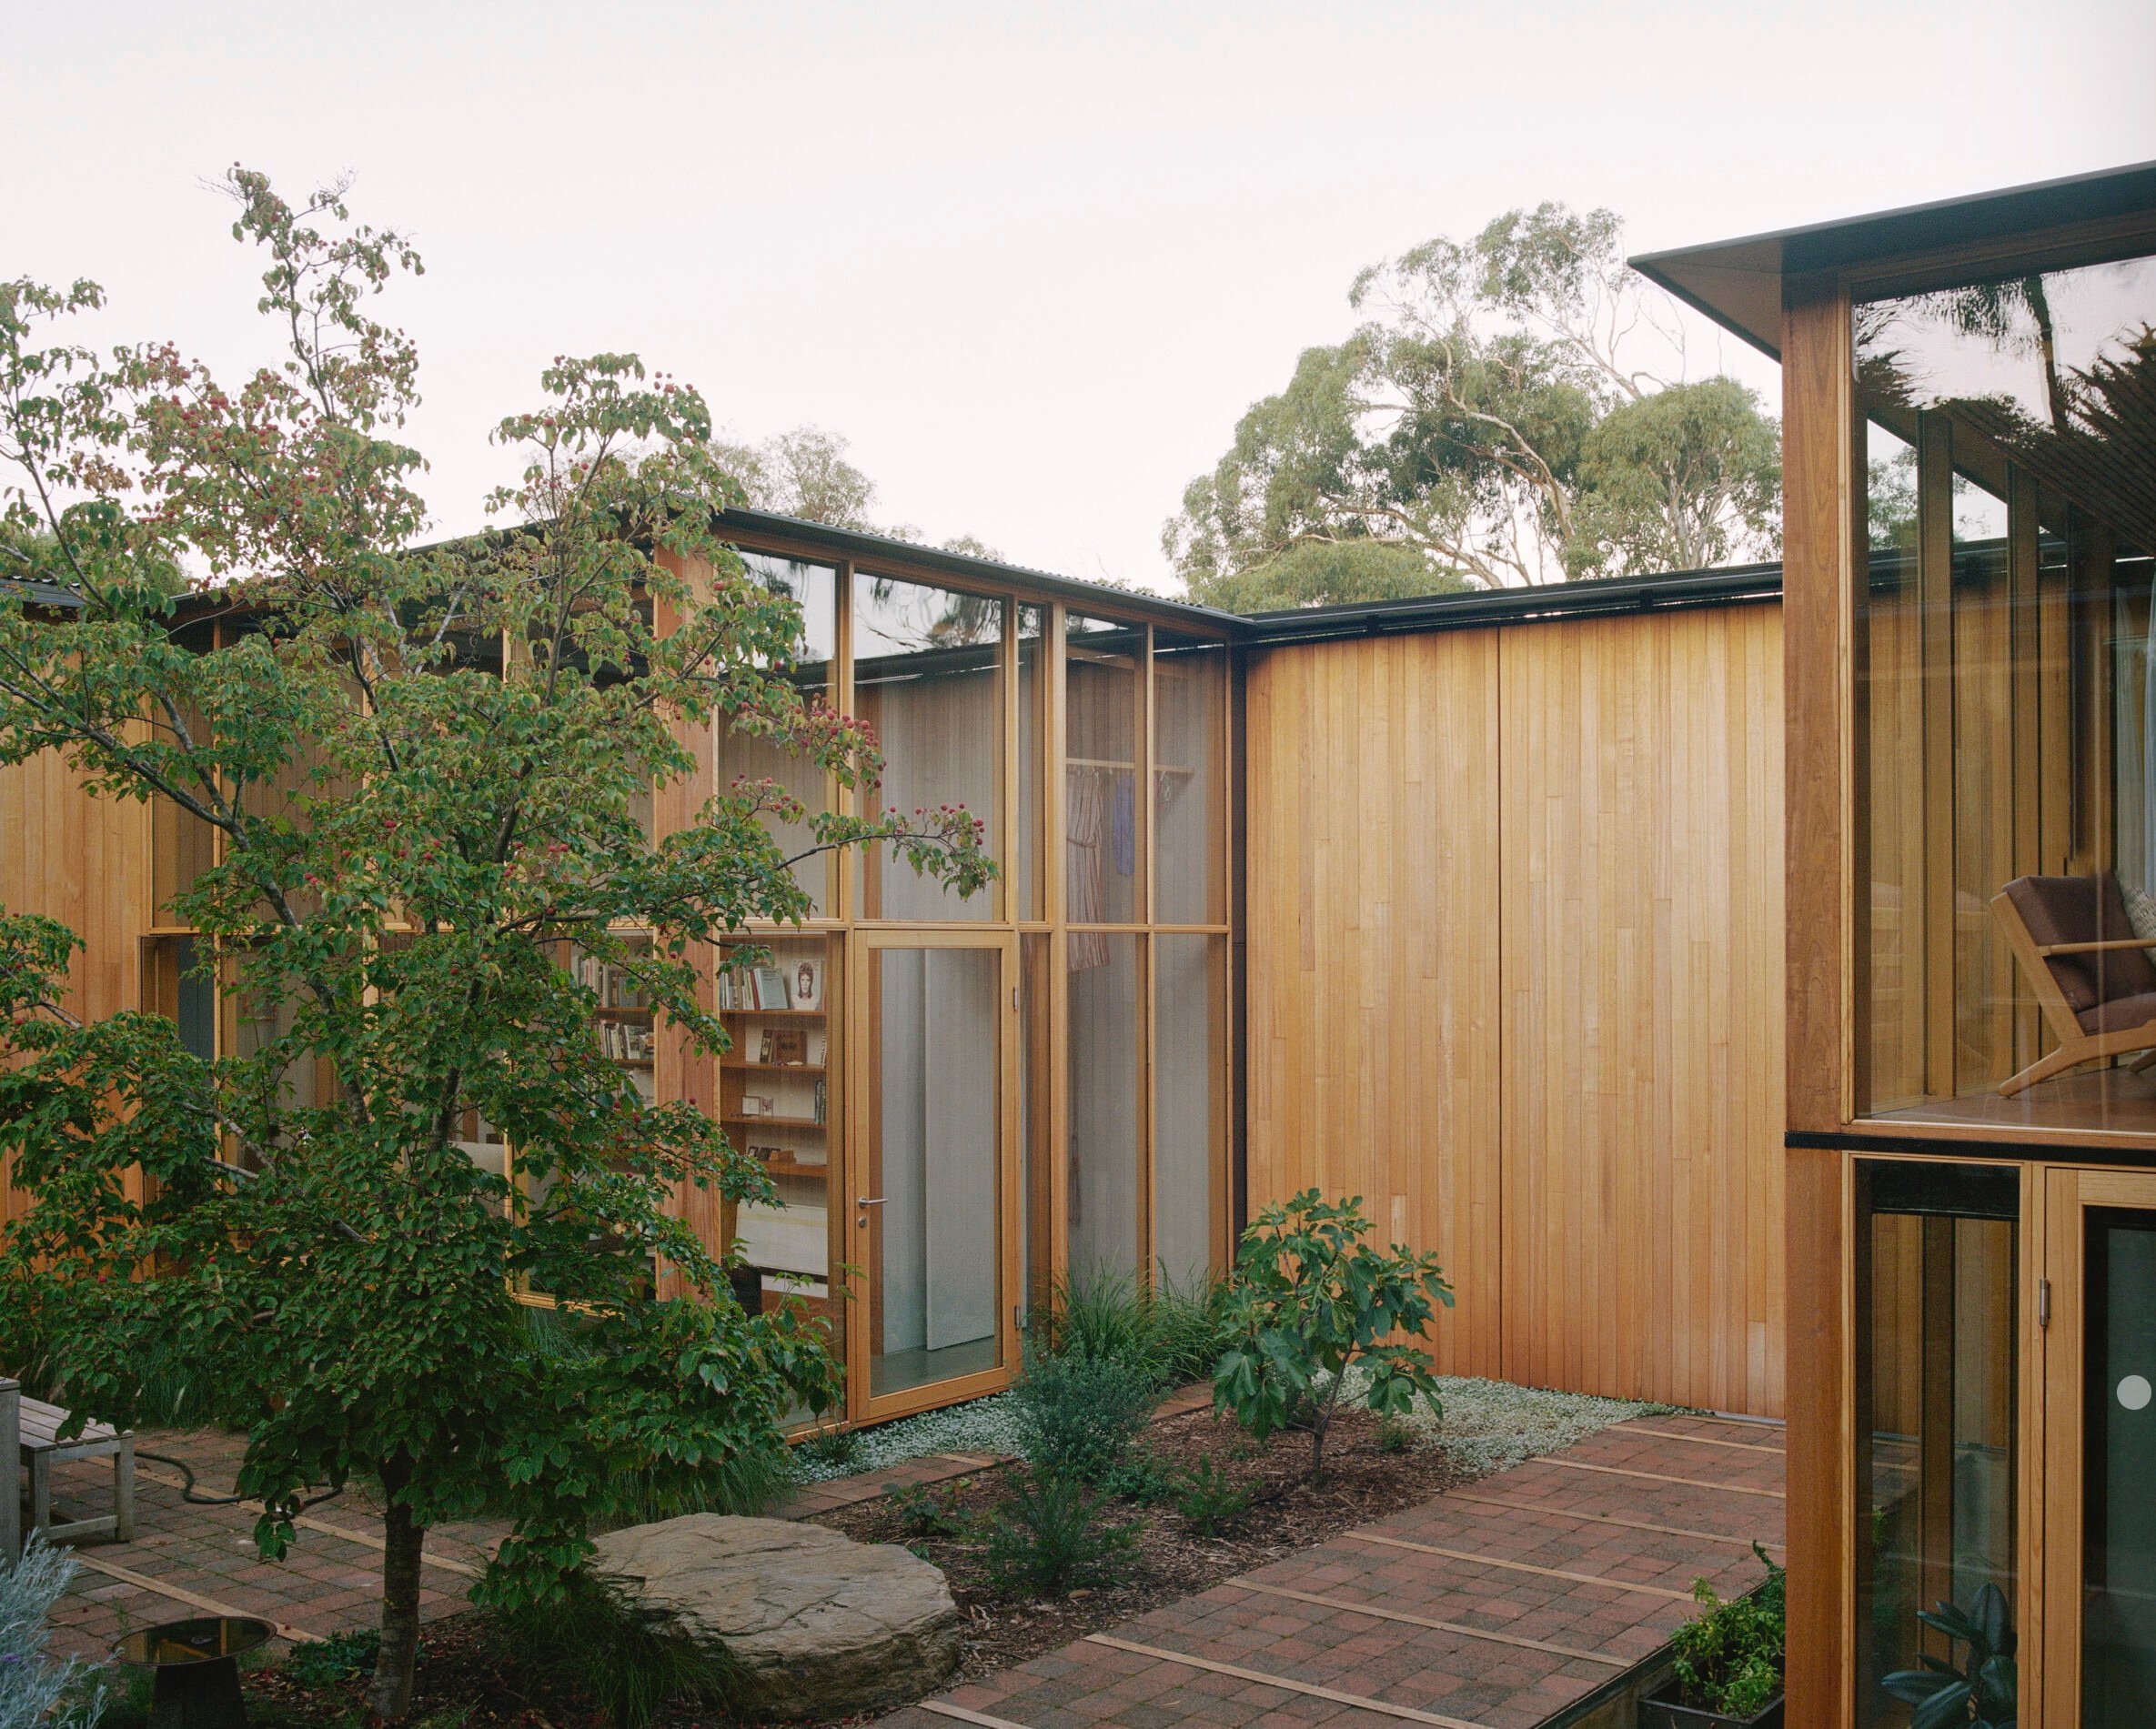 Wood-paneled courtyard house